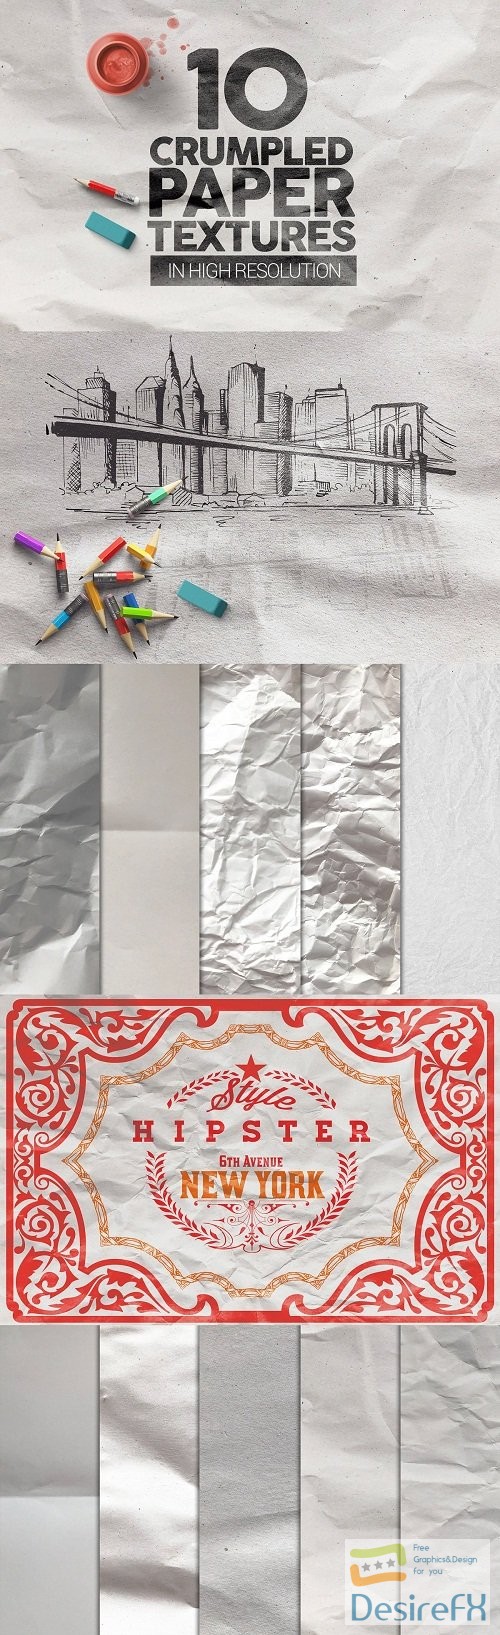 Crumpled Paper Textures x10 - 3703659